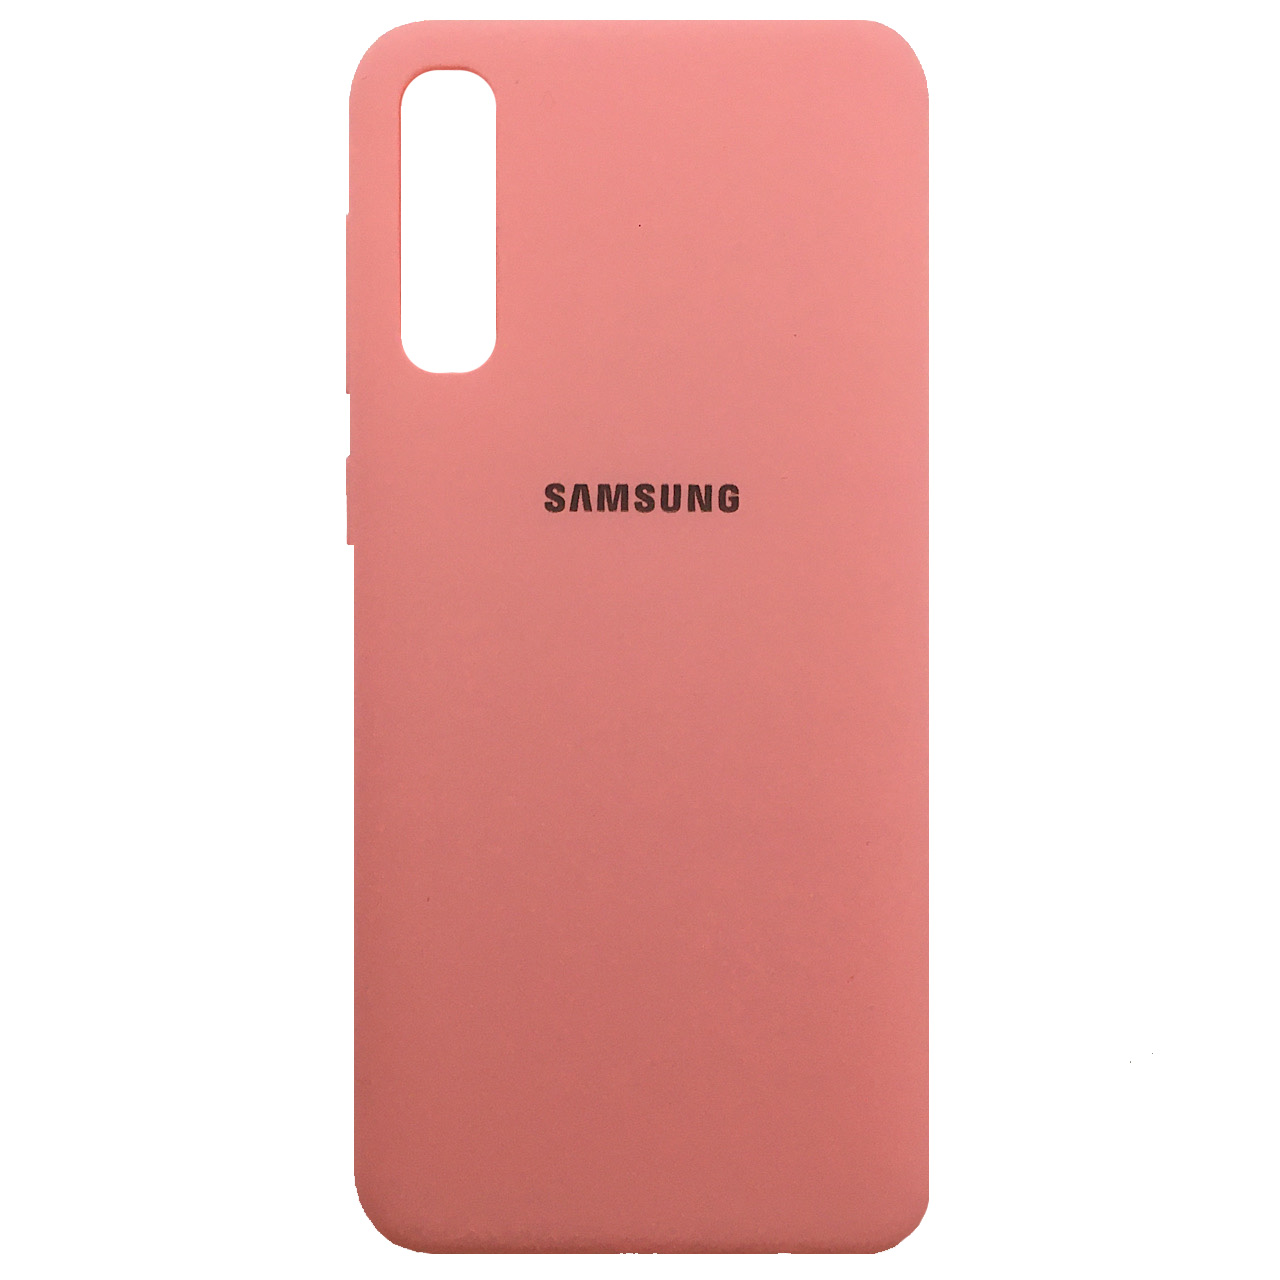 کاور مدل S0179 مناسب برای گوشی موبایل سامسونگ Galaxy A50 / A50s / A30s